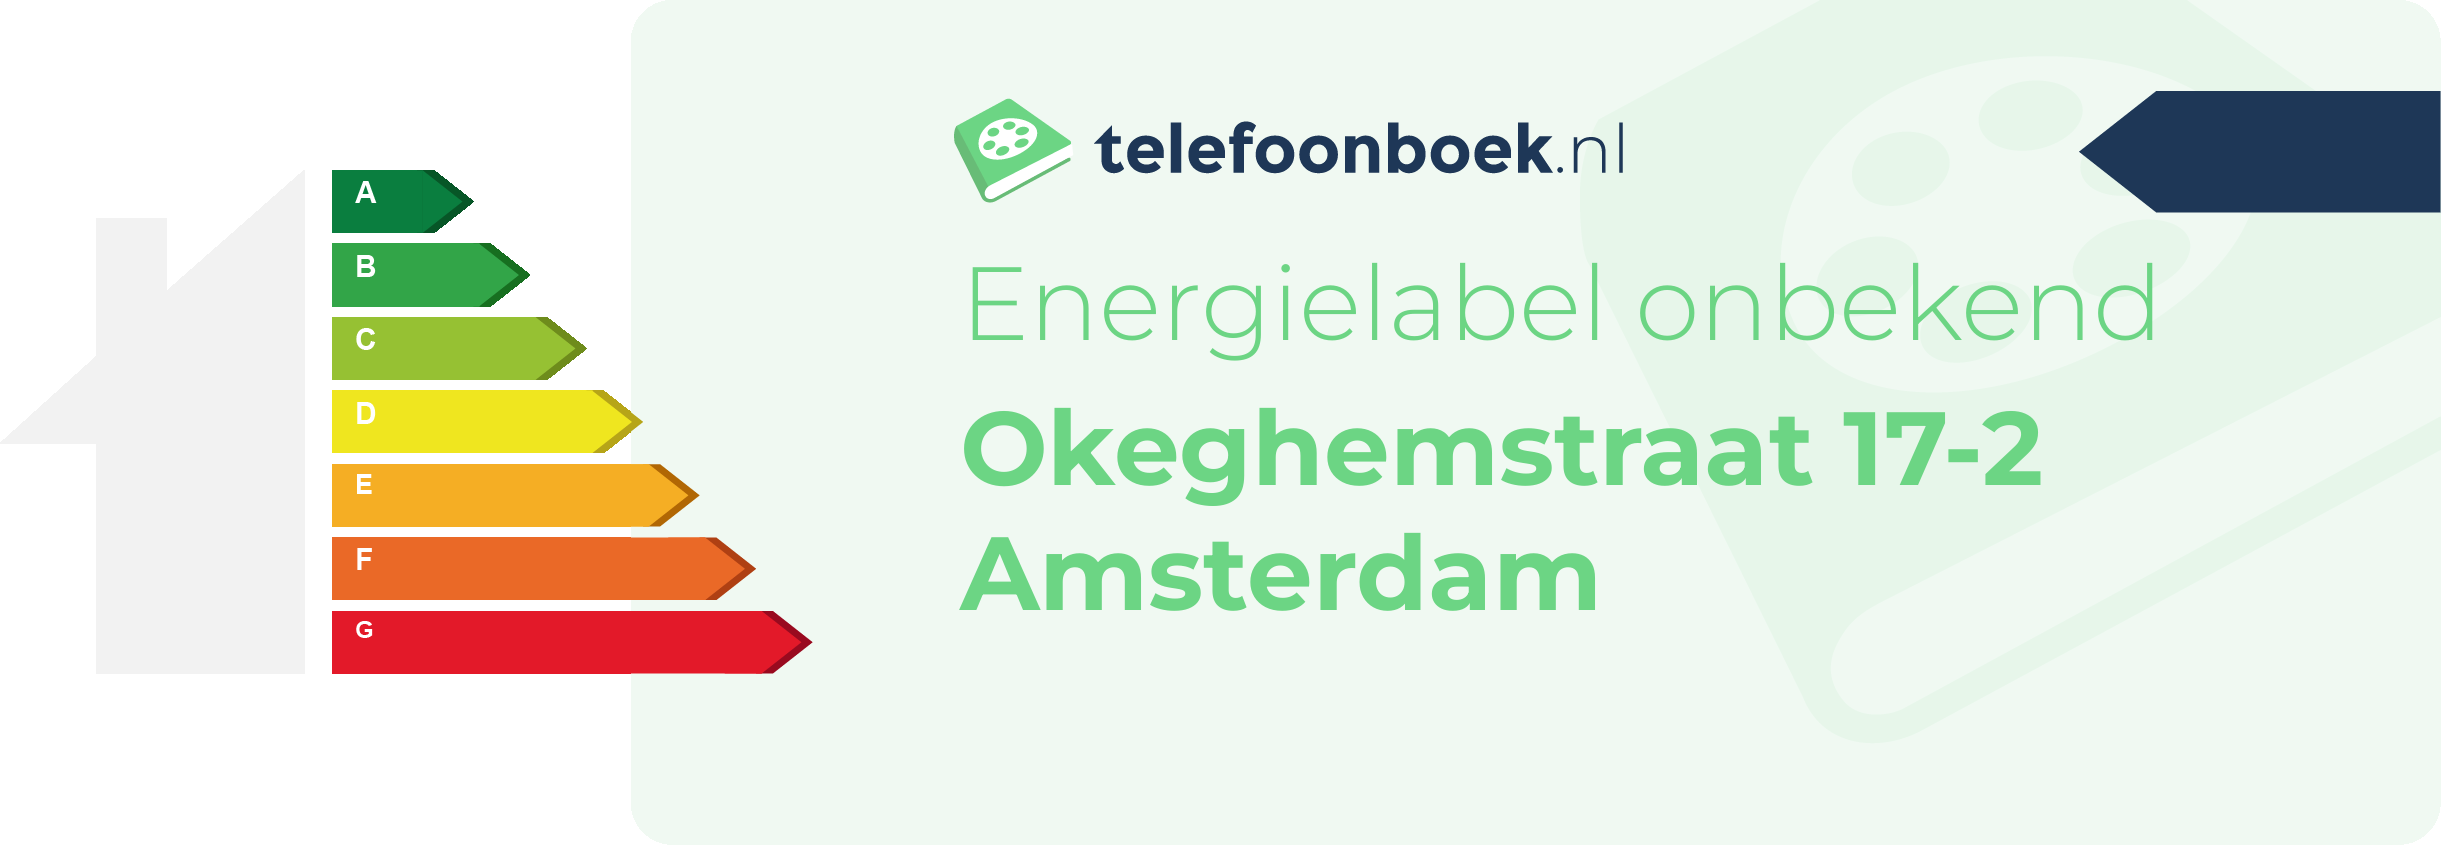 Energielabel Okeghemstraat 17-2 Amsterdam